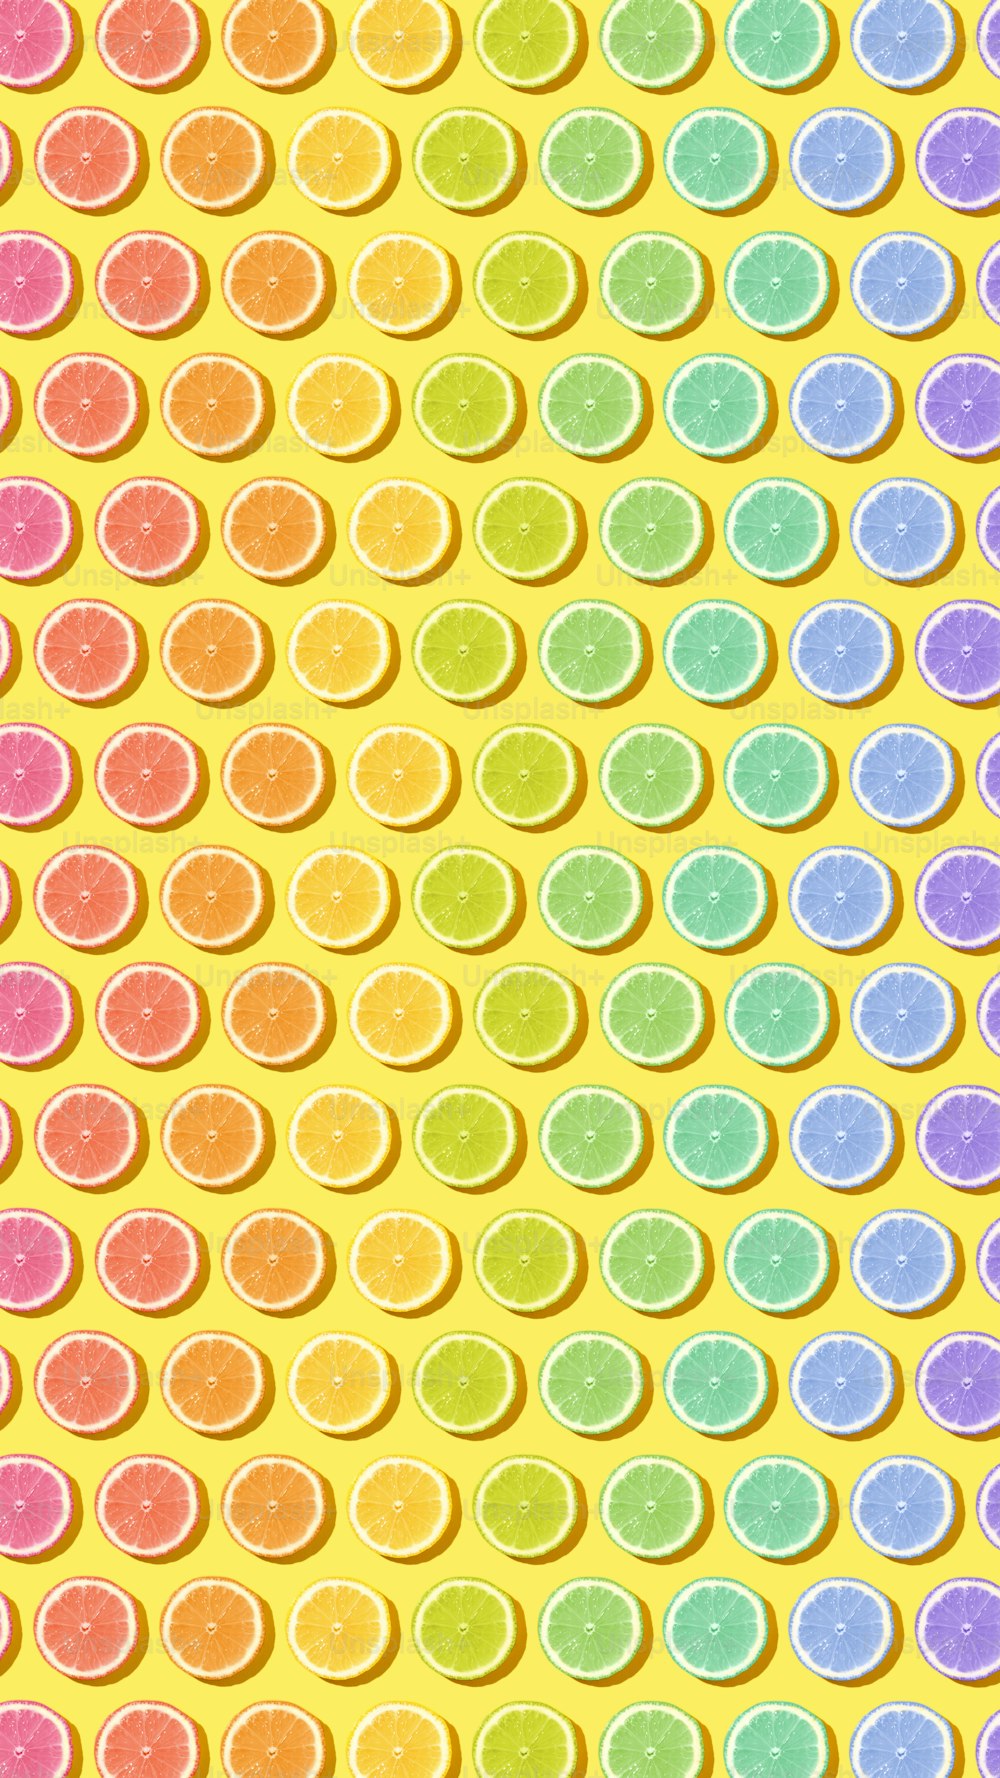 Un fond coloré avec des cercles de différentes couleurs